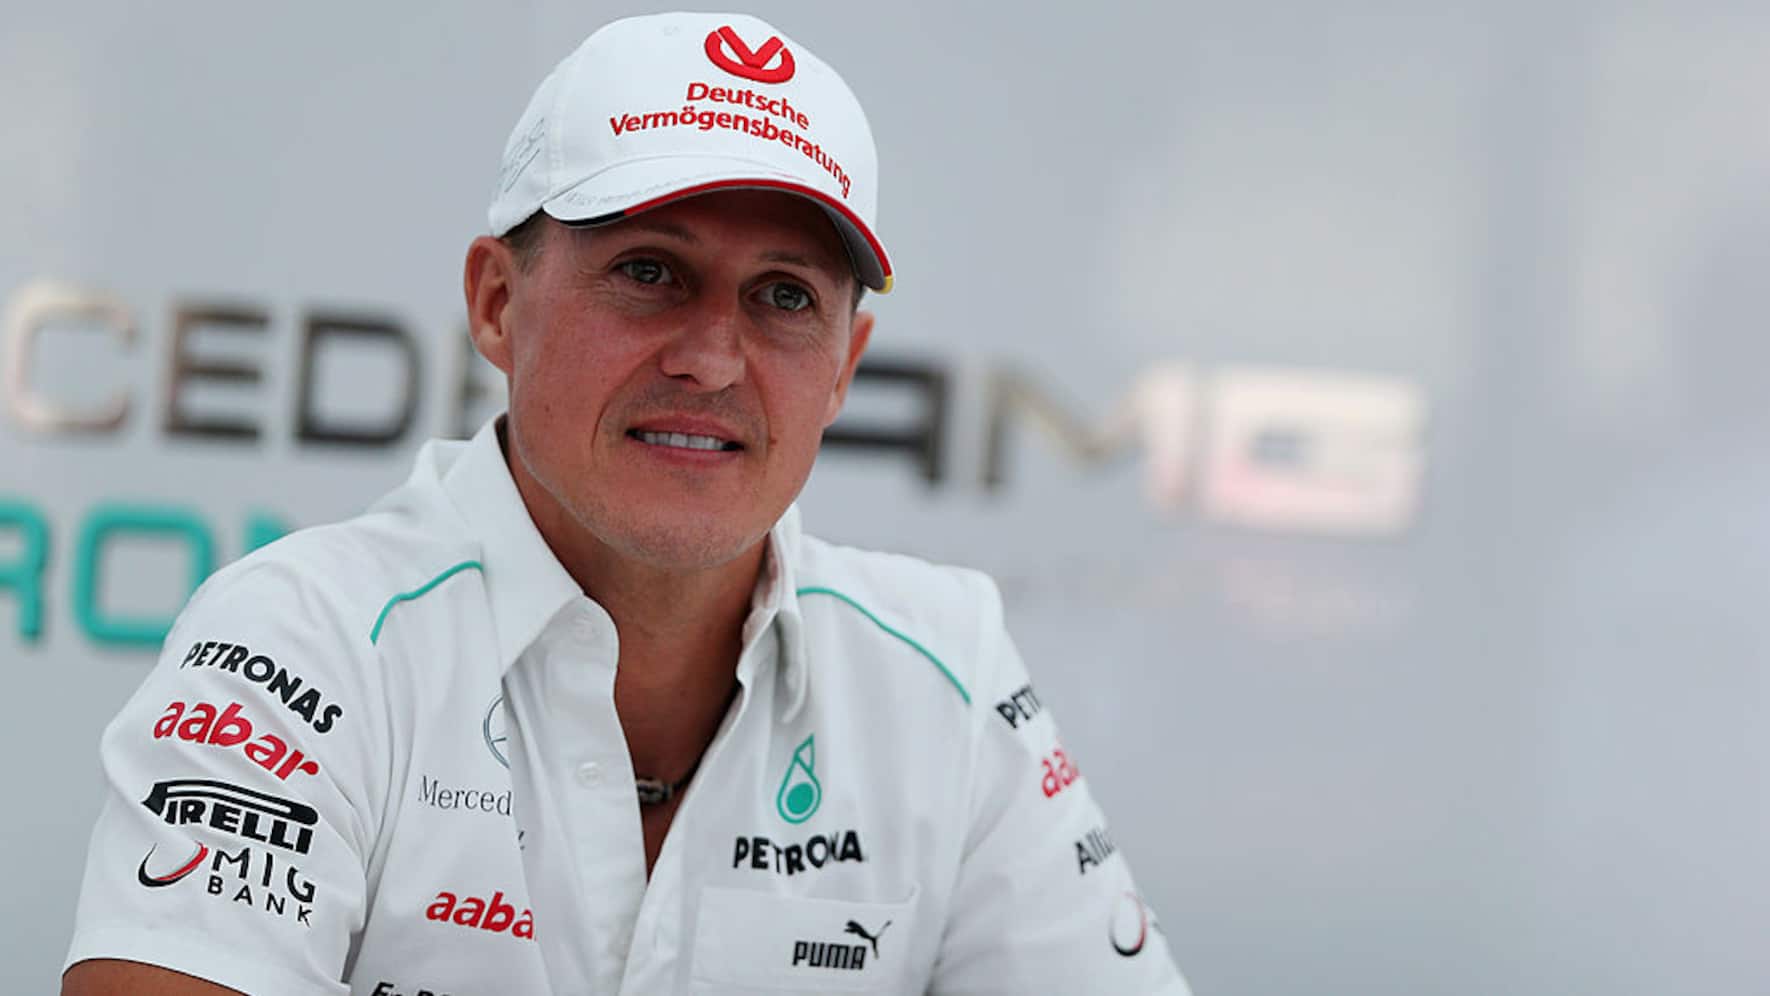 Darum erfährt man nichts über den Gesundheitszustand von Michael Schumacher